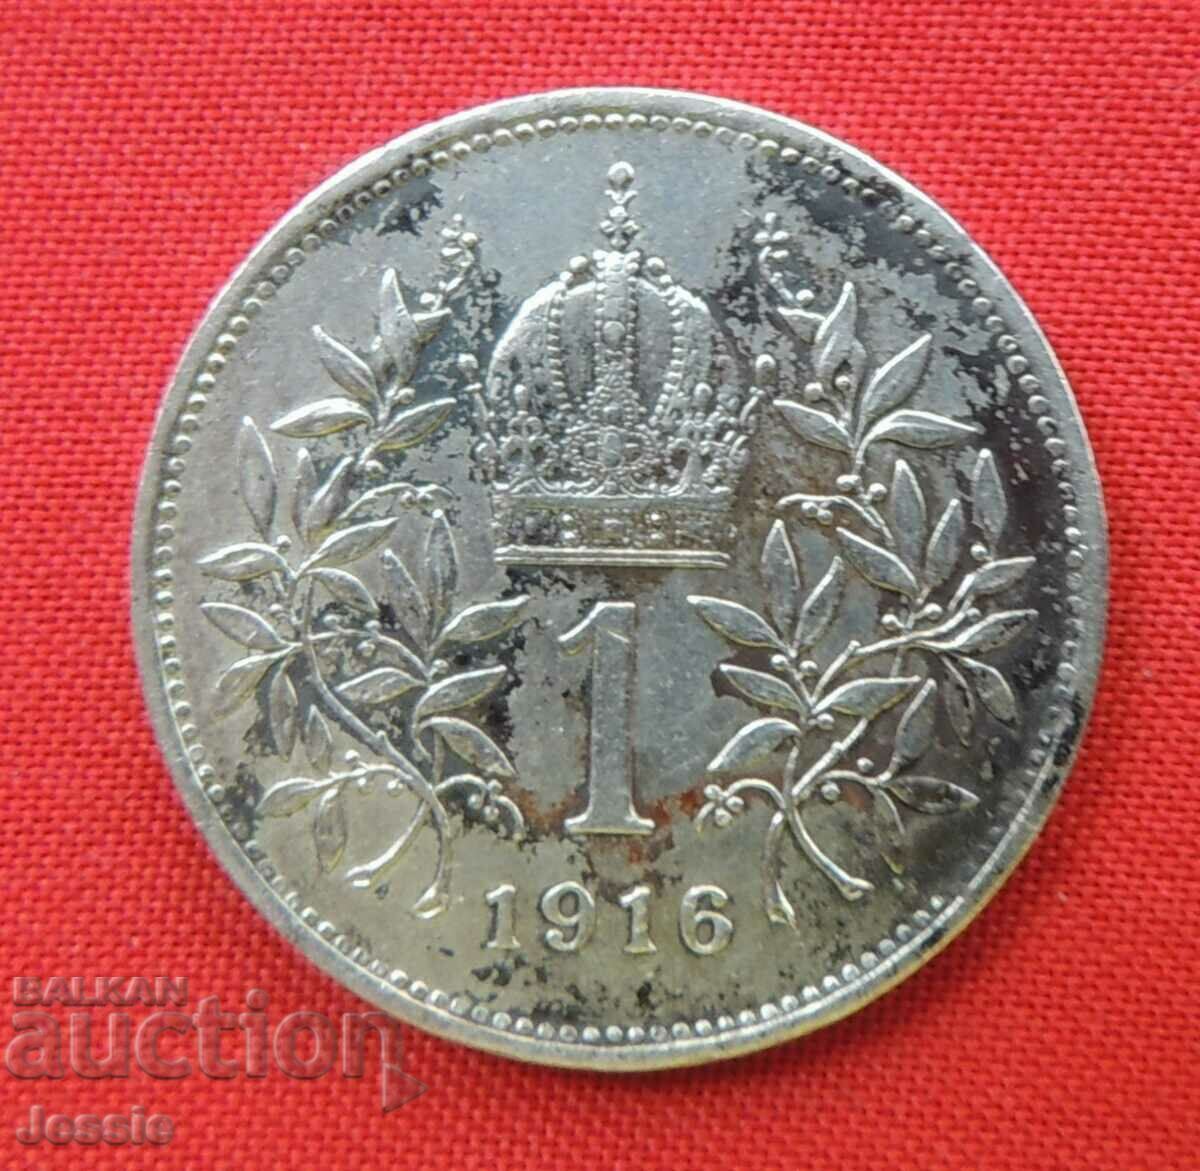 1 coroană 1893 argint Austria